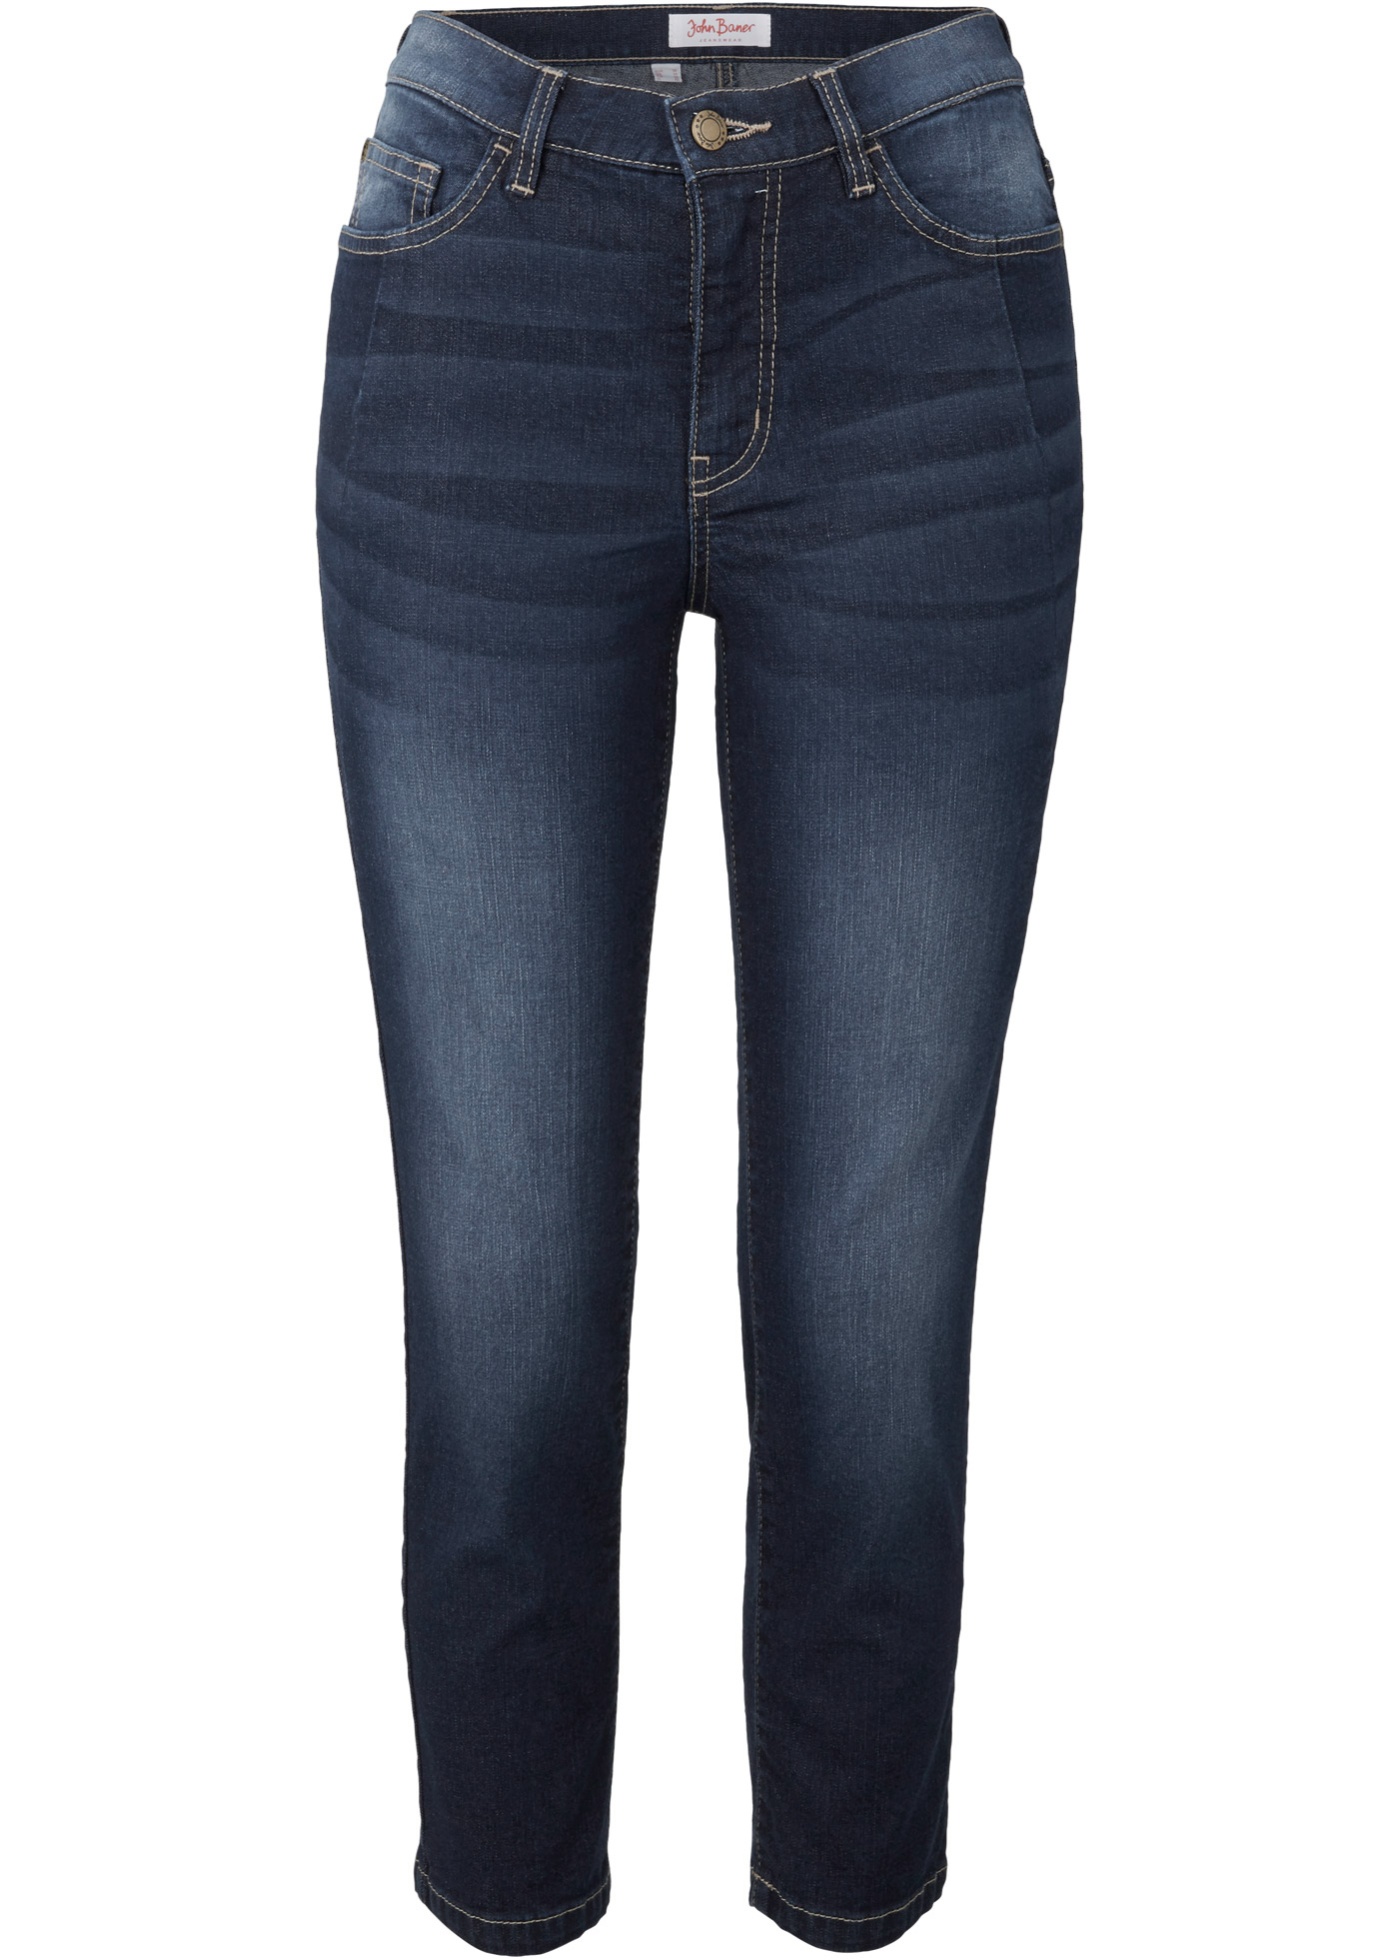 Soft-strečové džínsy slim, 7 8-dĺžka